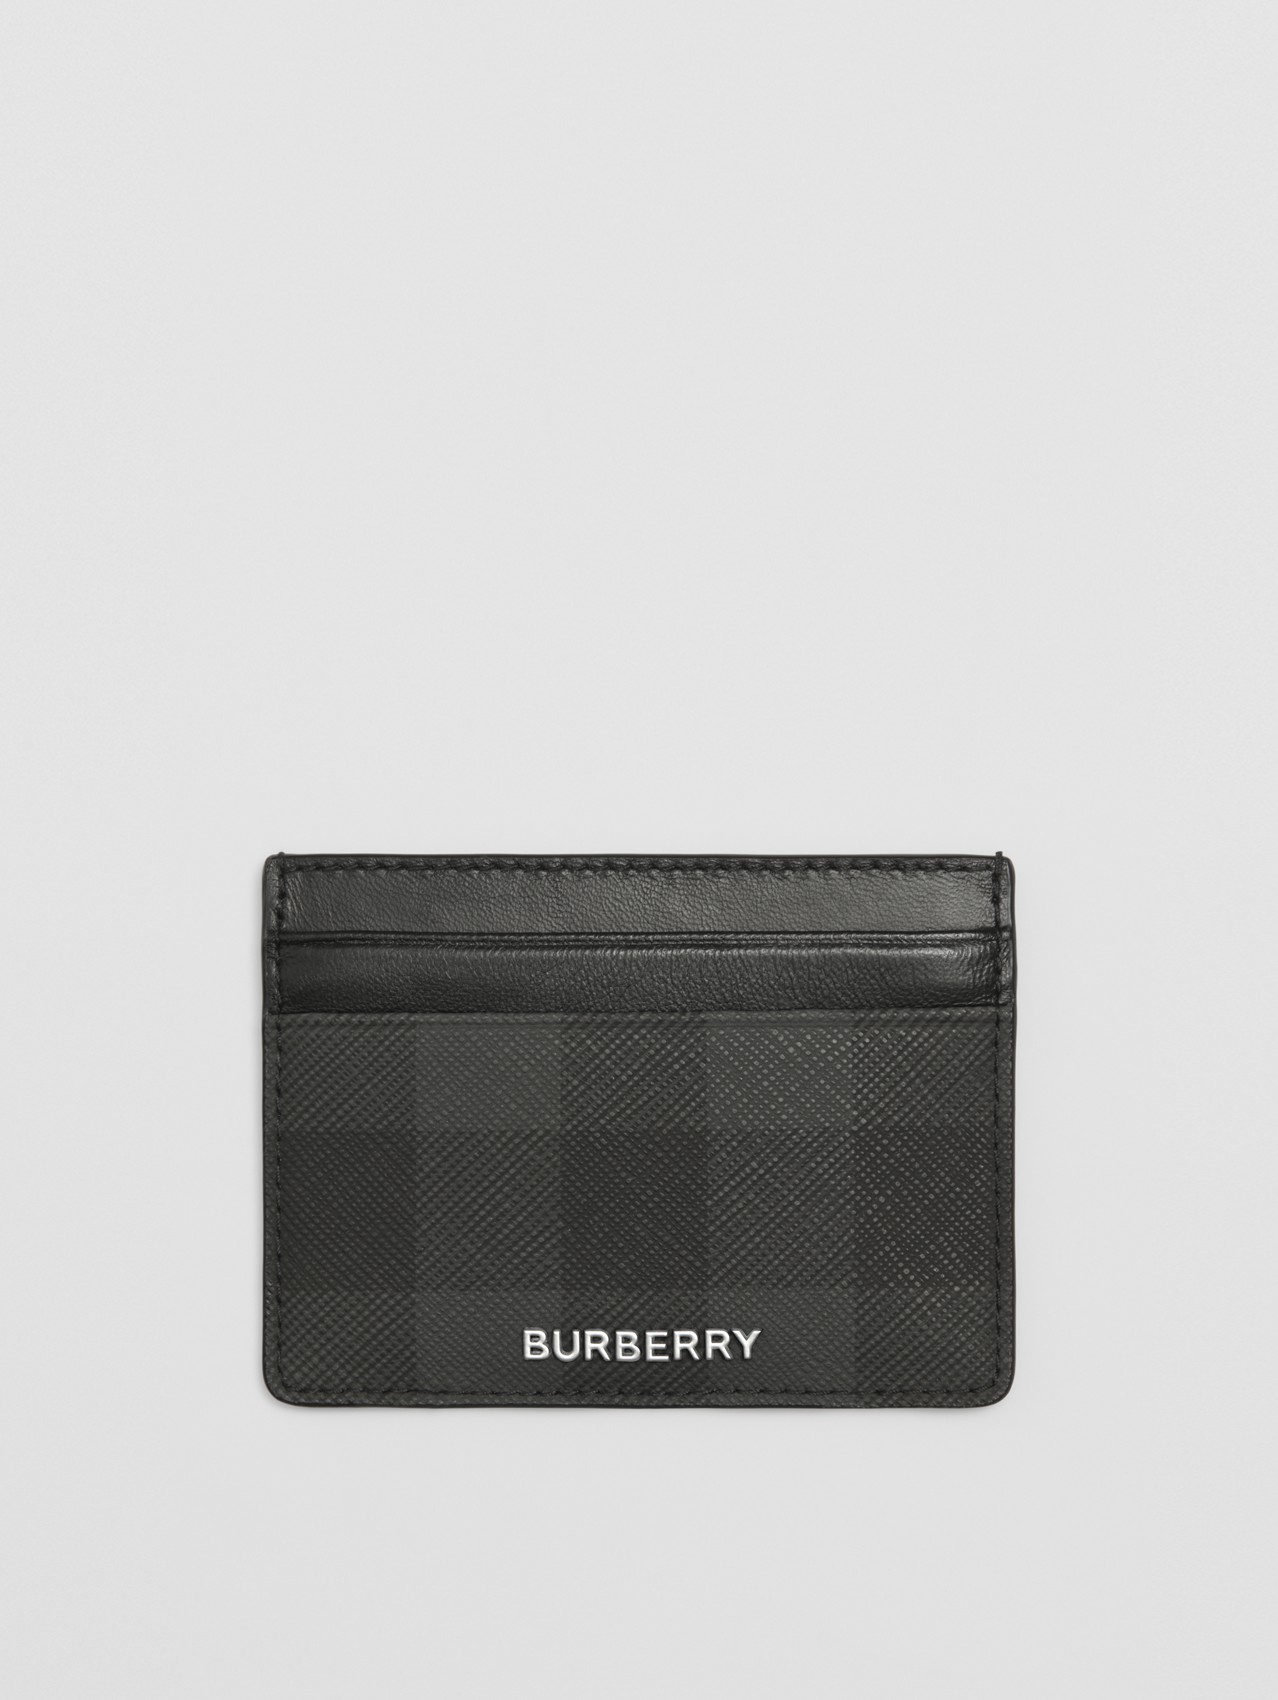 Burberry Portefeuille Burberry Pour Homme Burberry men's wallet 